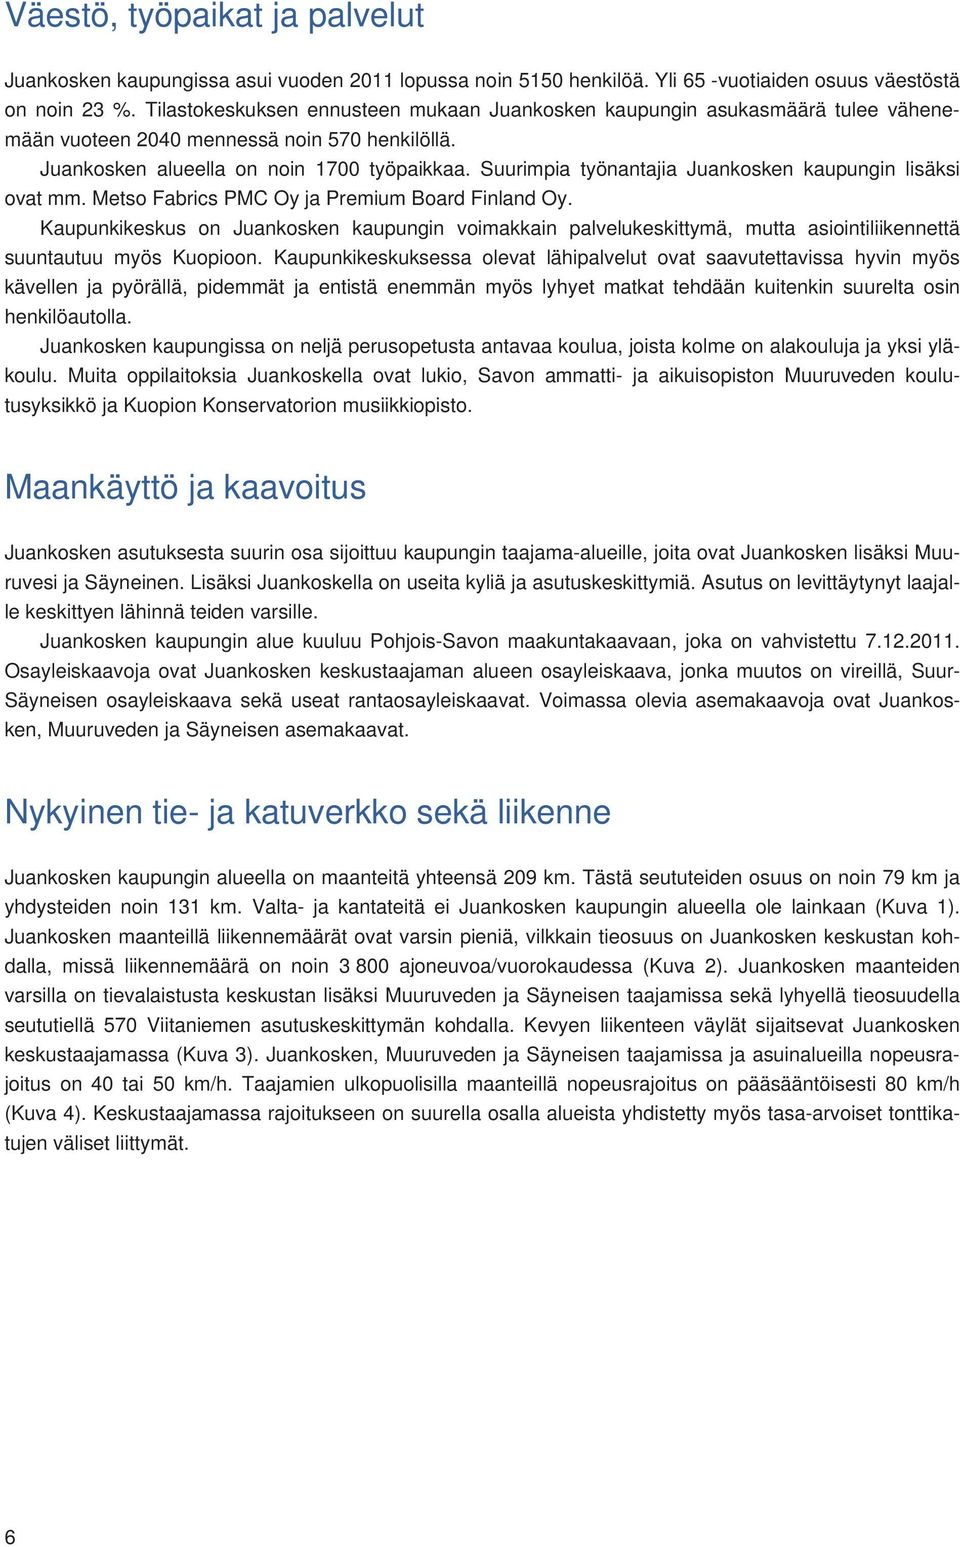 Suurimpia työnantajia Juankosken kaupungin lisäksi ovat mm. Metso Fabrics PMC Oy ja Premium Board Finland Oy.